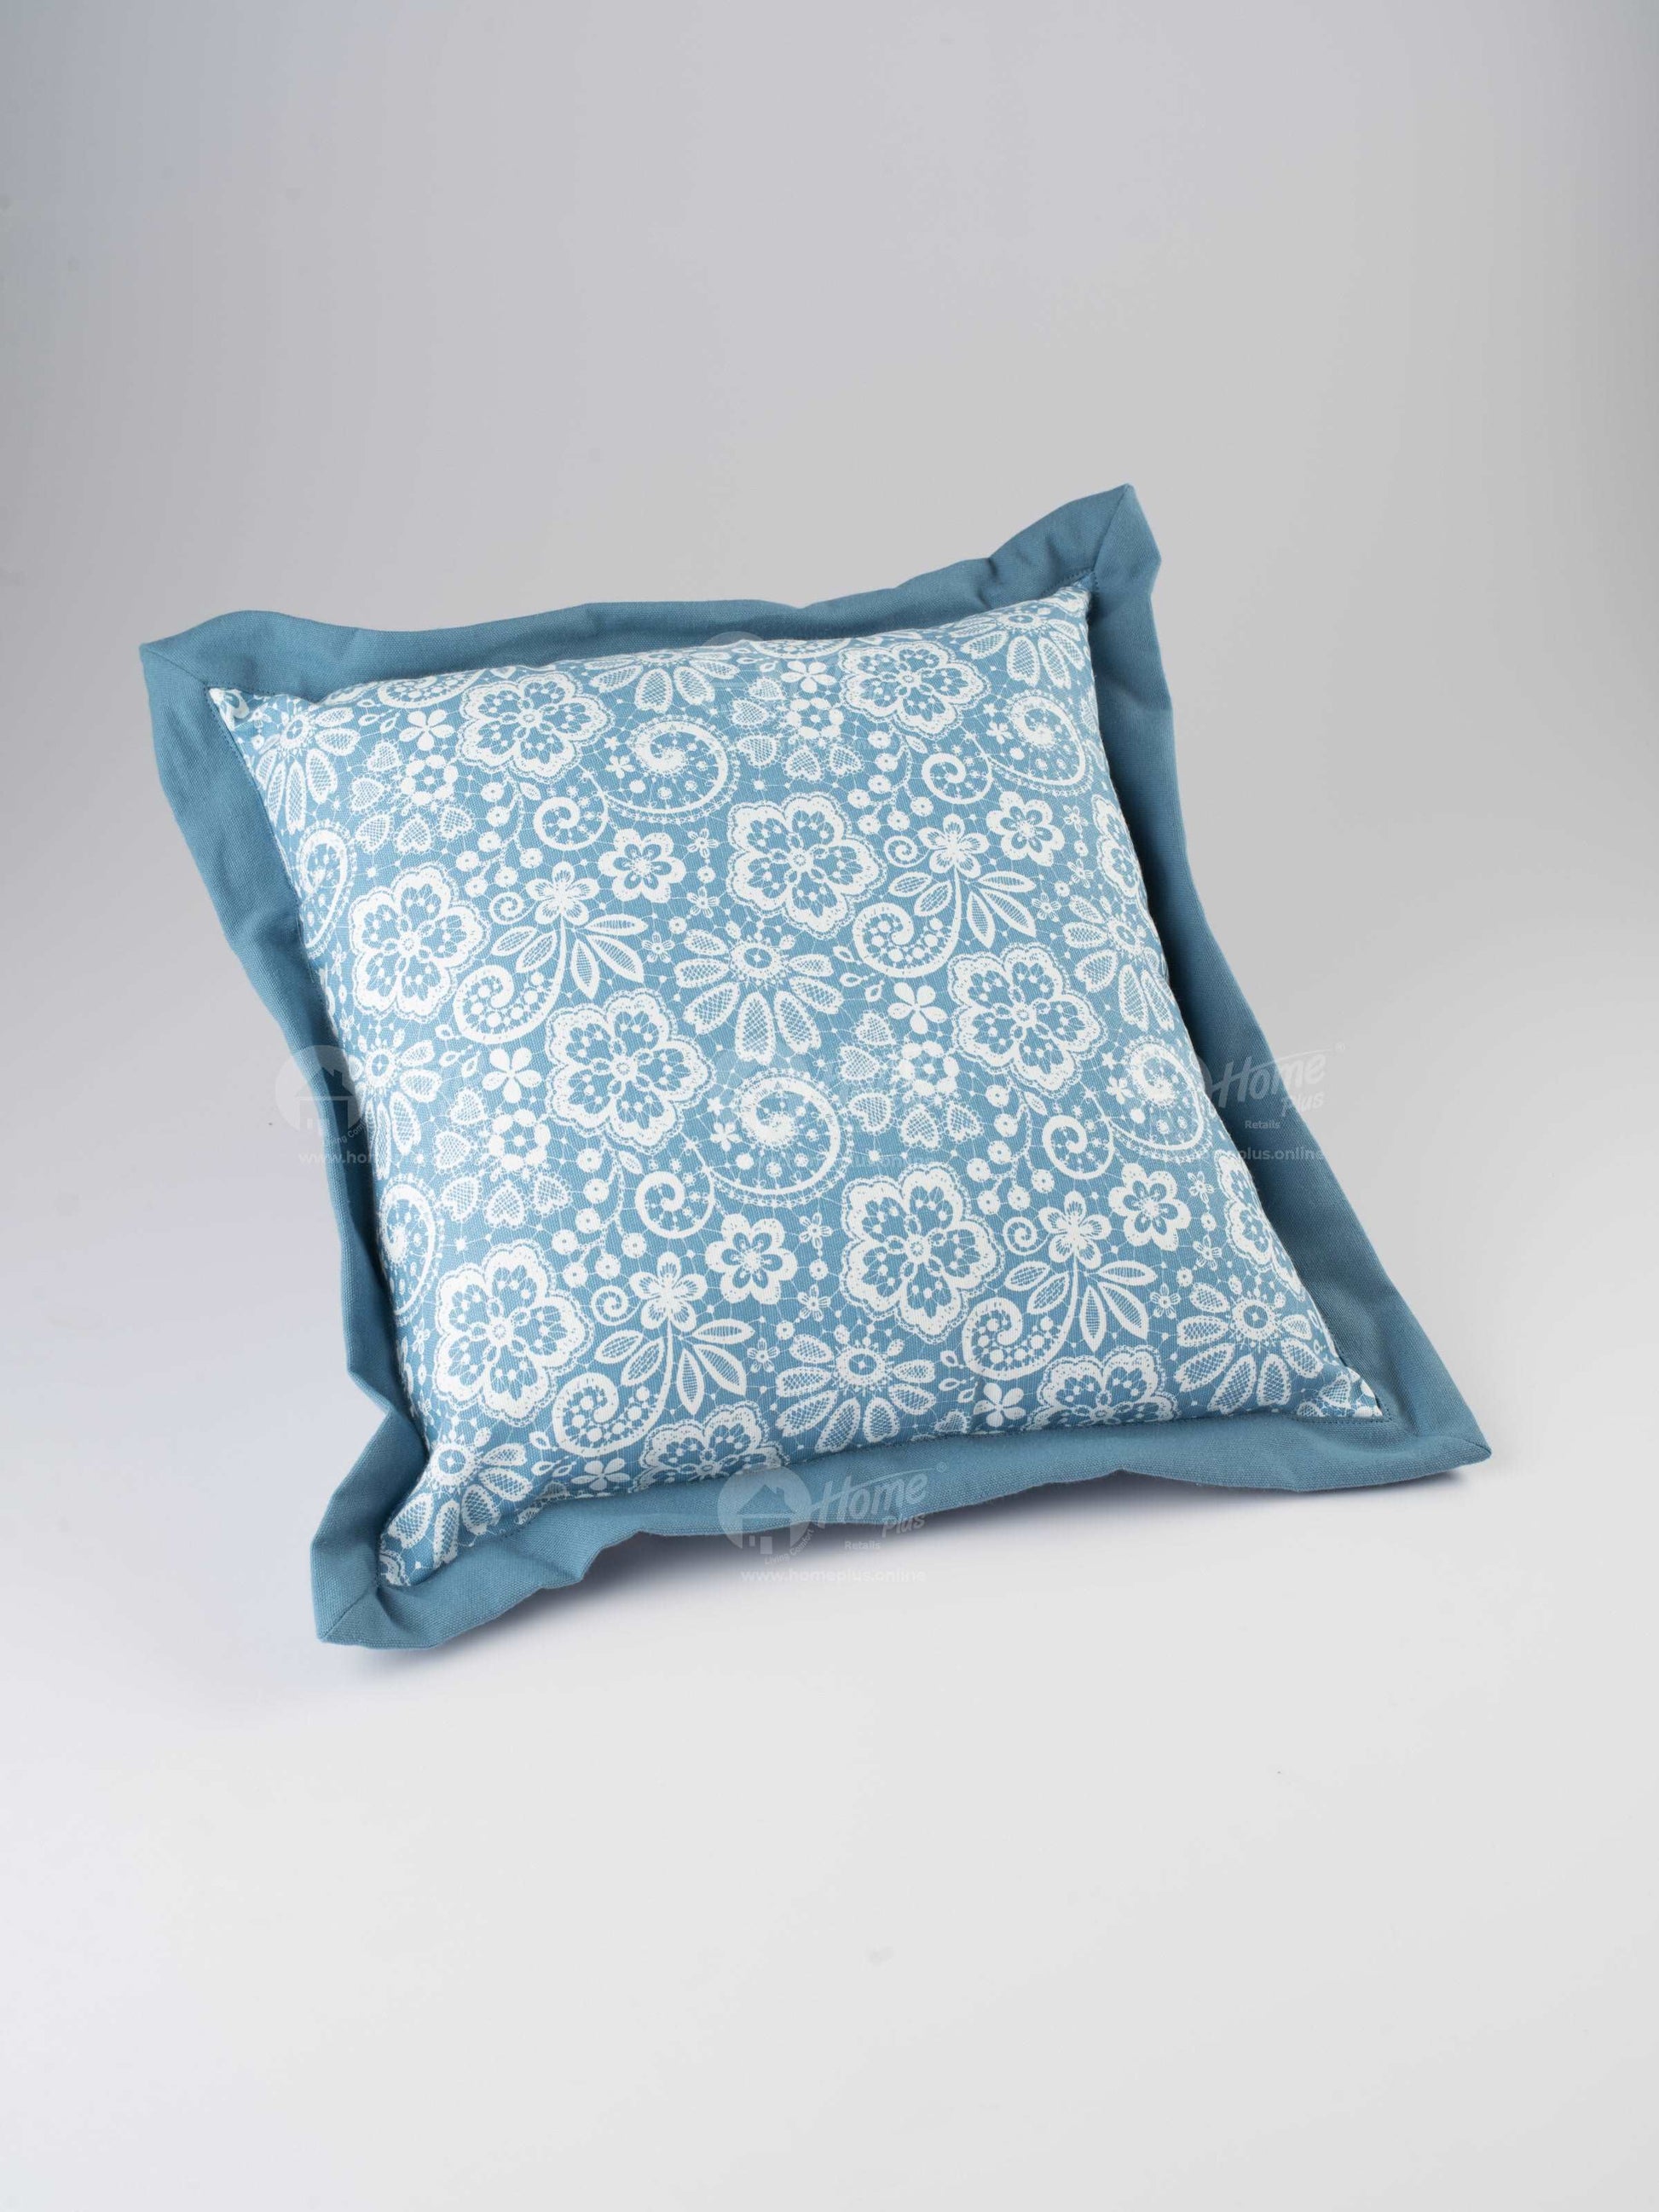 Flange Cushion - Lace AF Blue